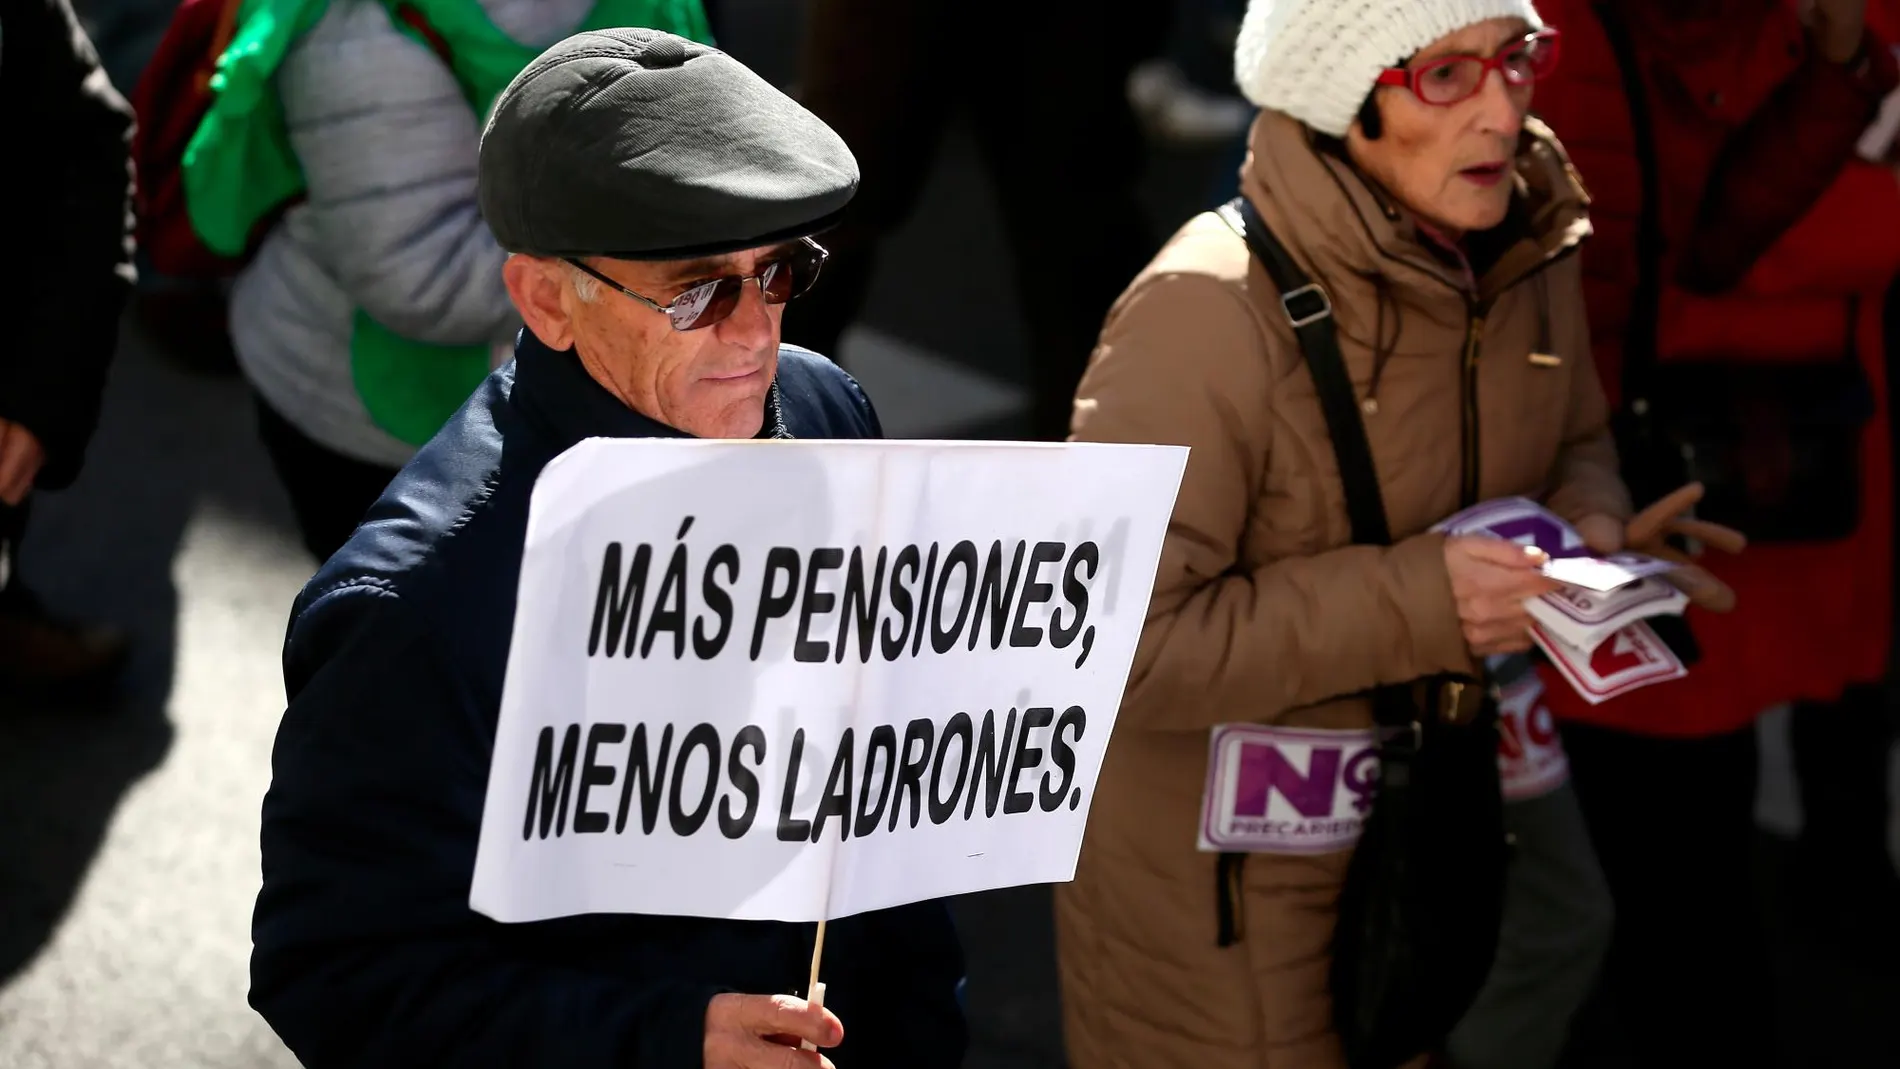 Los pensionistas han celebrado manifestaciones exigiendo pensiones más altas